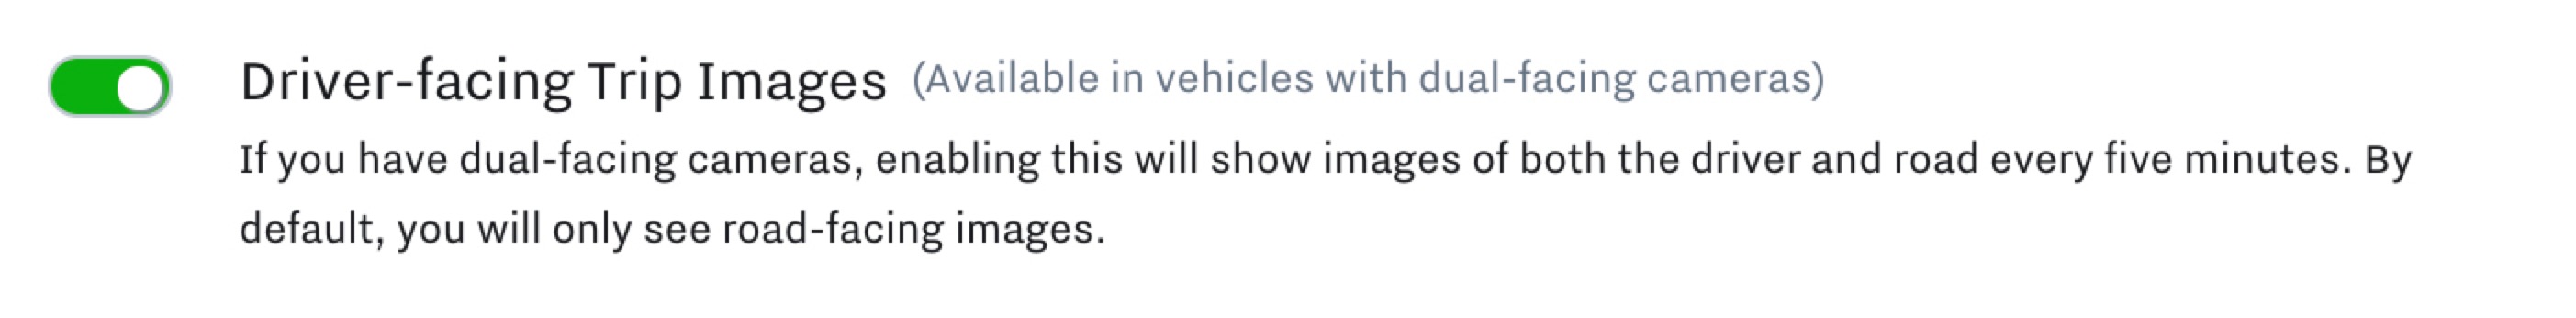 driver_facing_trip_images.jpg